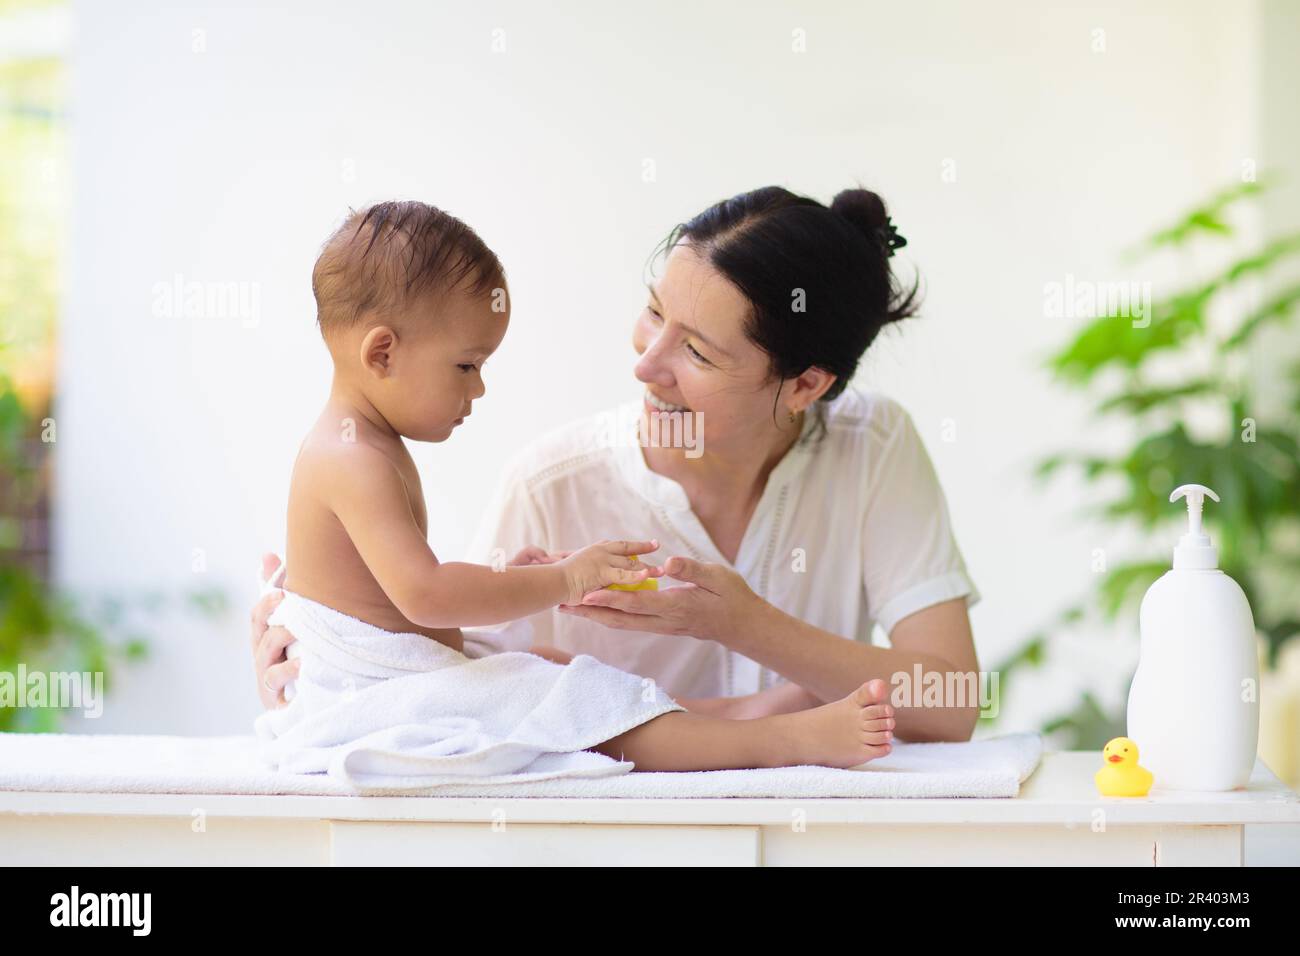 Mère changeant de couche sur bébé nouveau-né. Maman et bébé garçon riant après le bain ou la douche. Soins de la peau pour les jeunes enfants. Femme asiatique changeant de couche. Bain Banque D'Images